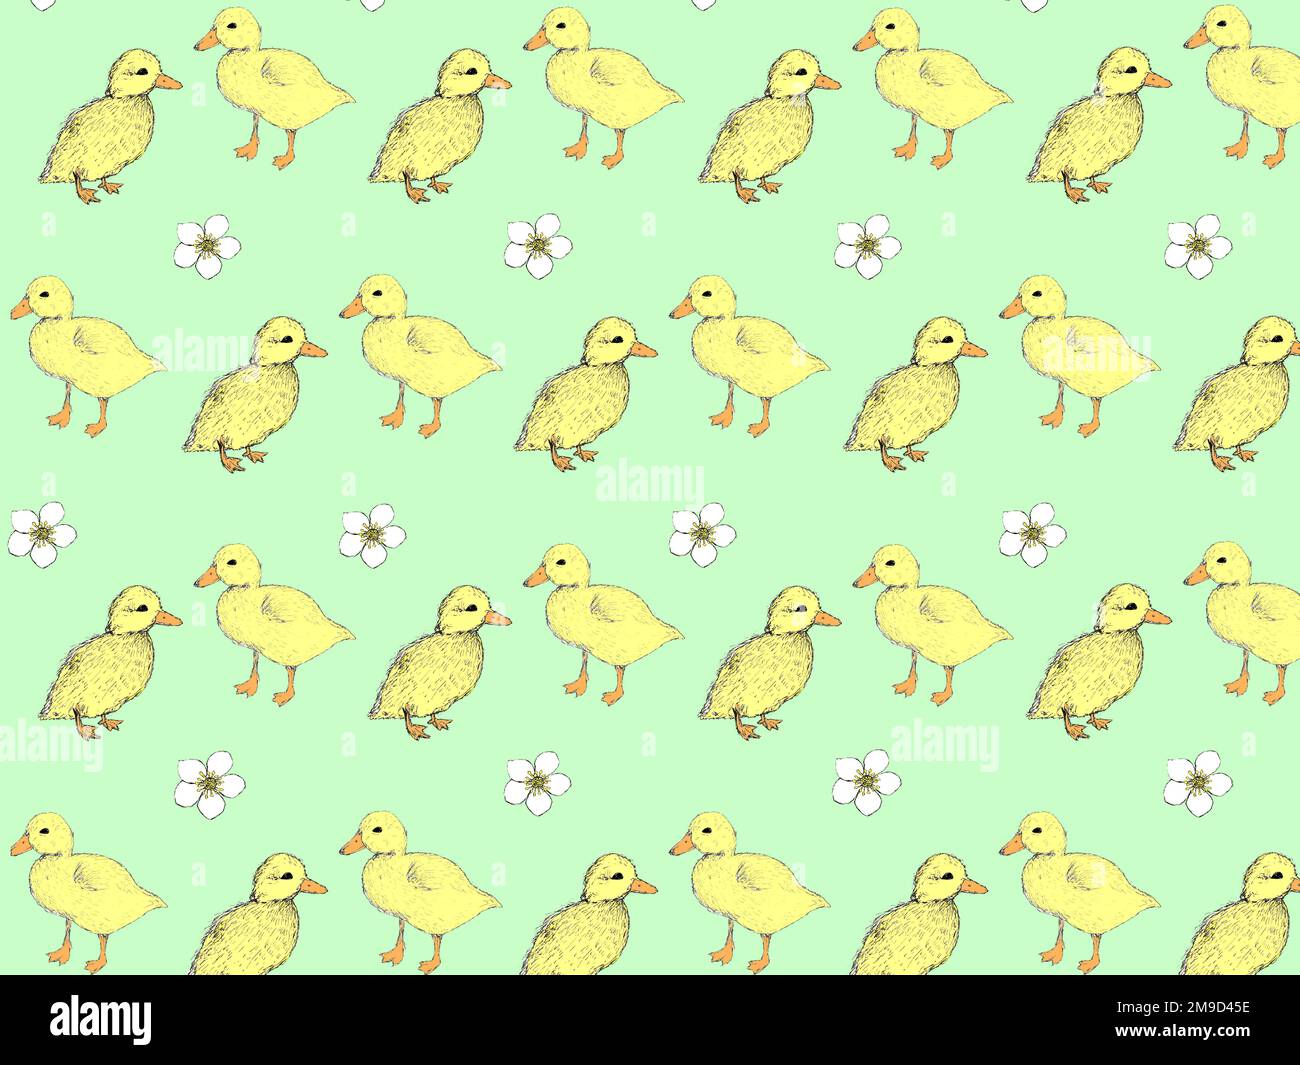 Patos amarillos esponjosos en un patrón repetitivo sobre un fondo verde pálido. Foto de stock